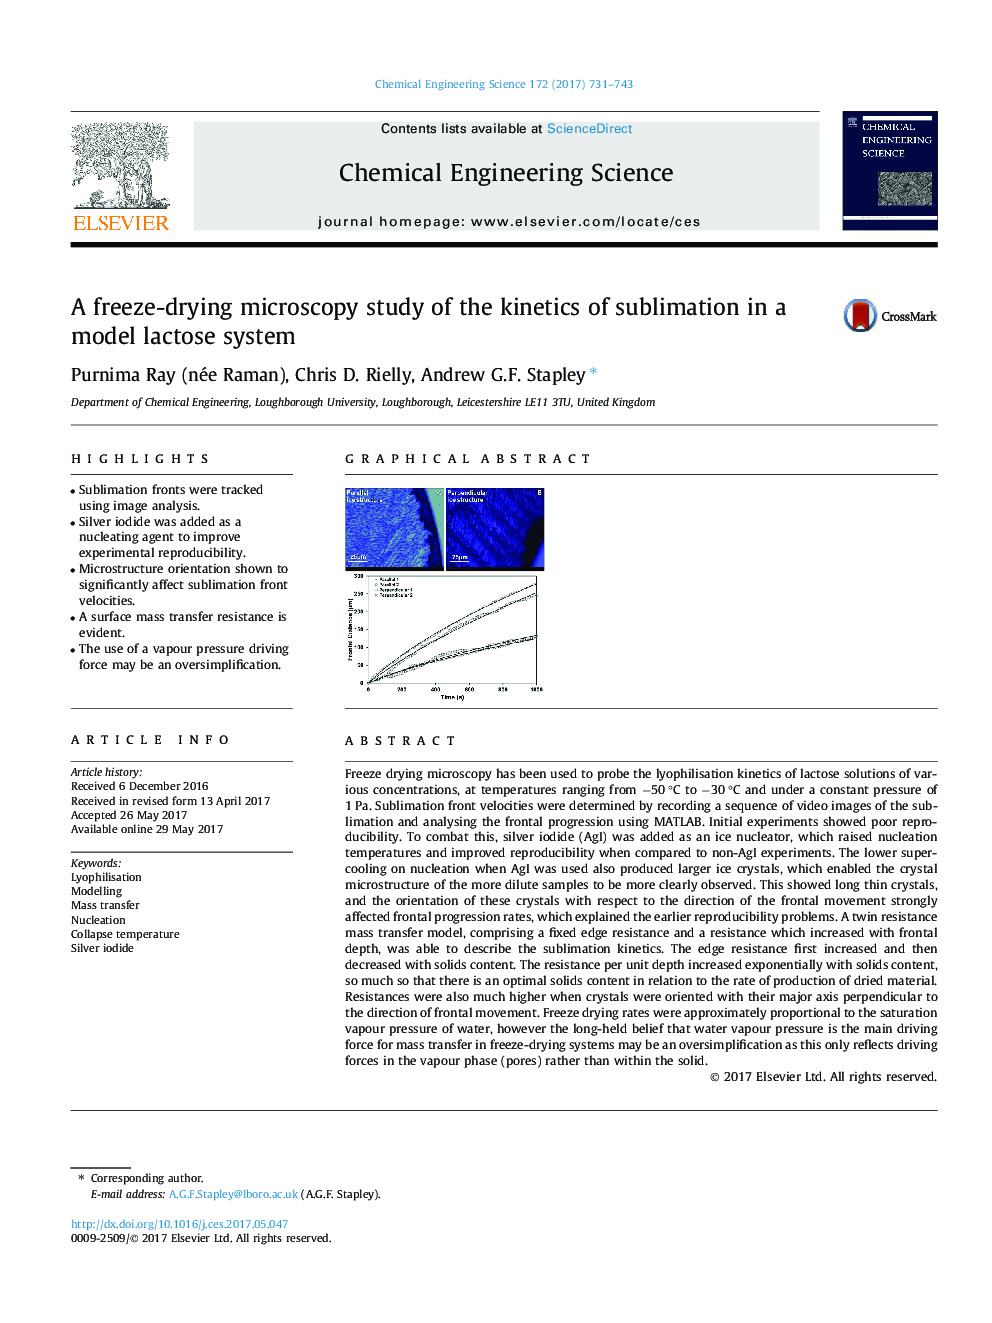 یک مطالعه میکروسکوپ یخ خشک خشک کردن سینتیک سولیزاسیون در سیستم لاکتوز مدل